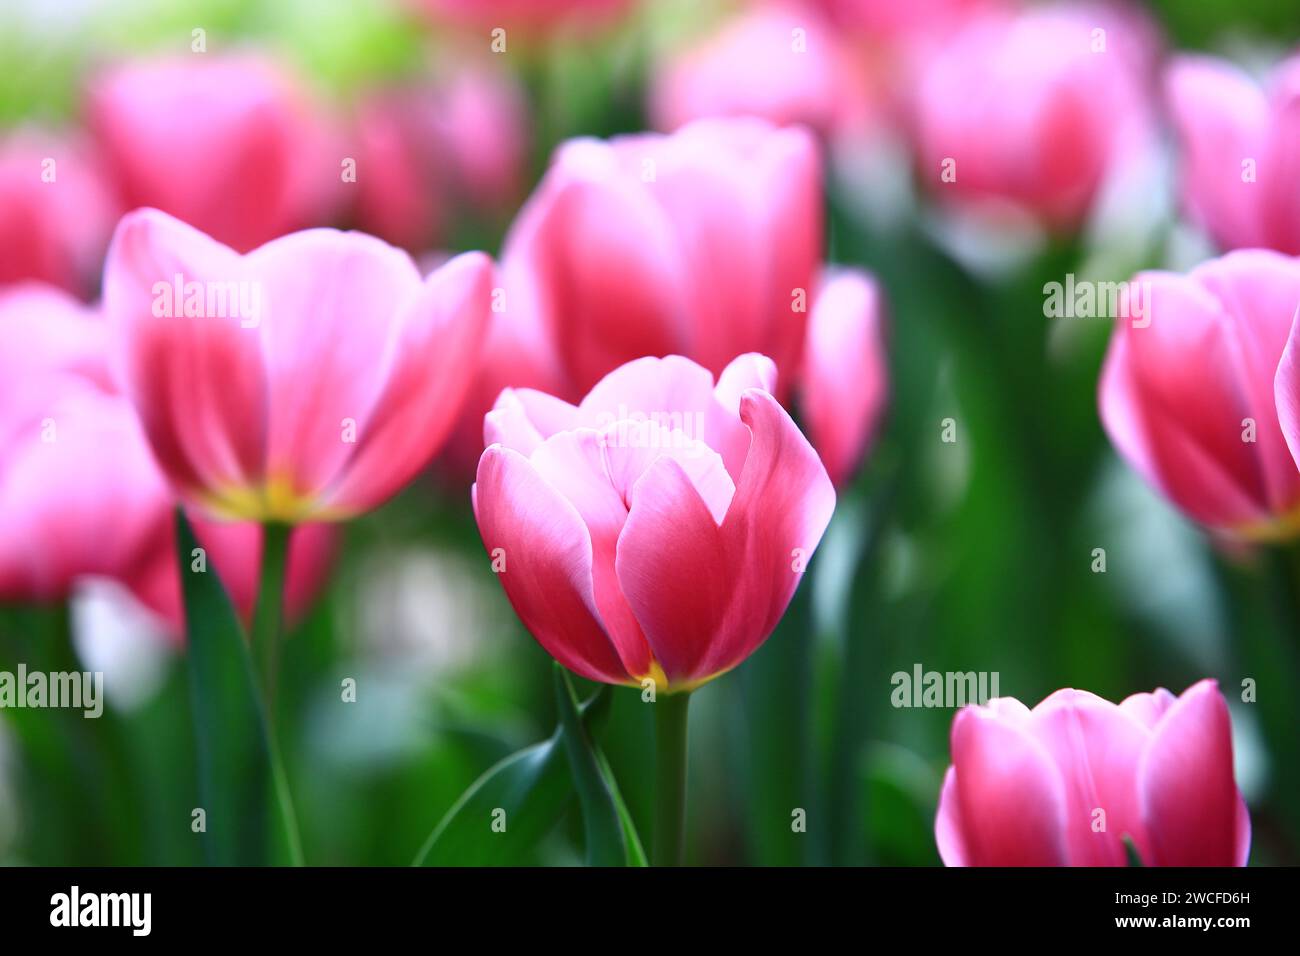 Fiori di tulipano rosa che fioriscono in giardino con foglie verdi Foto Stock